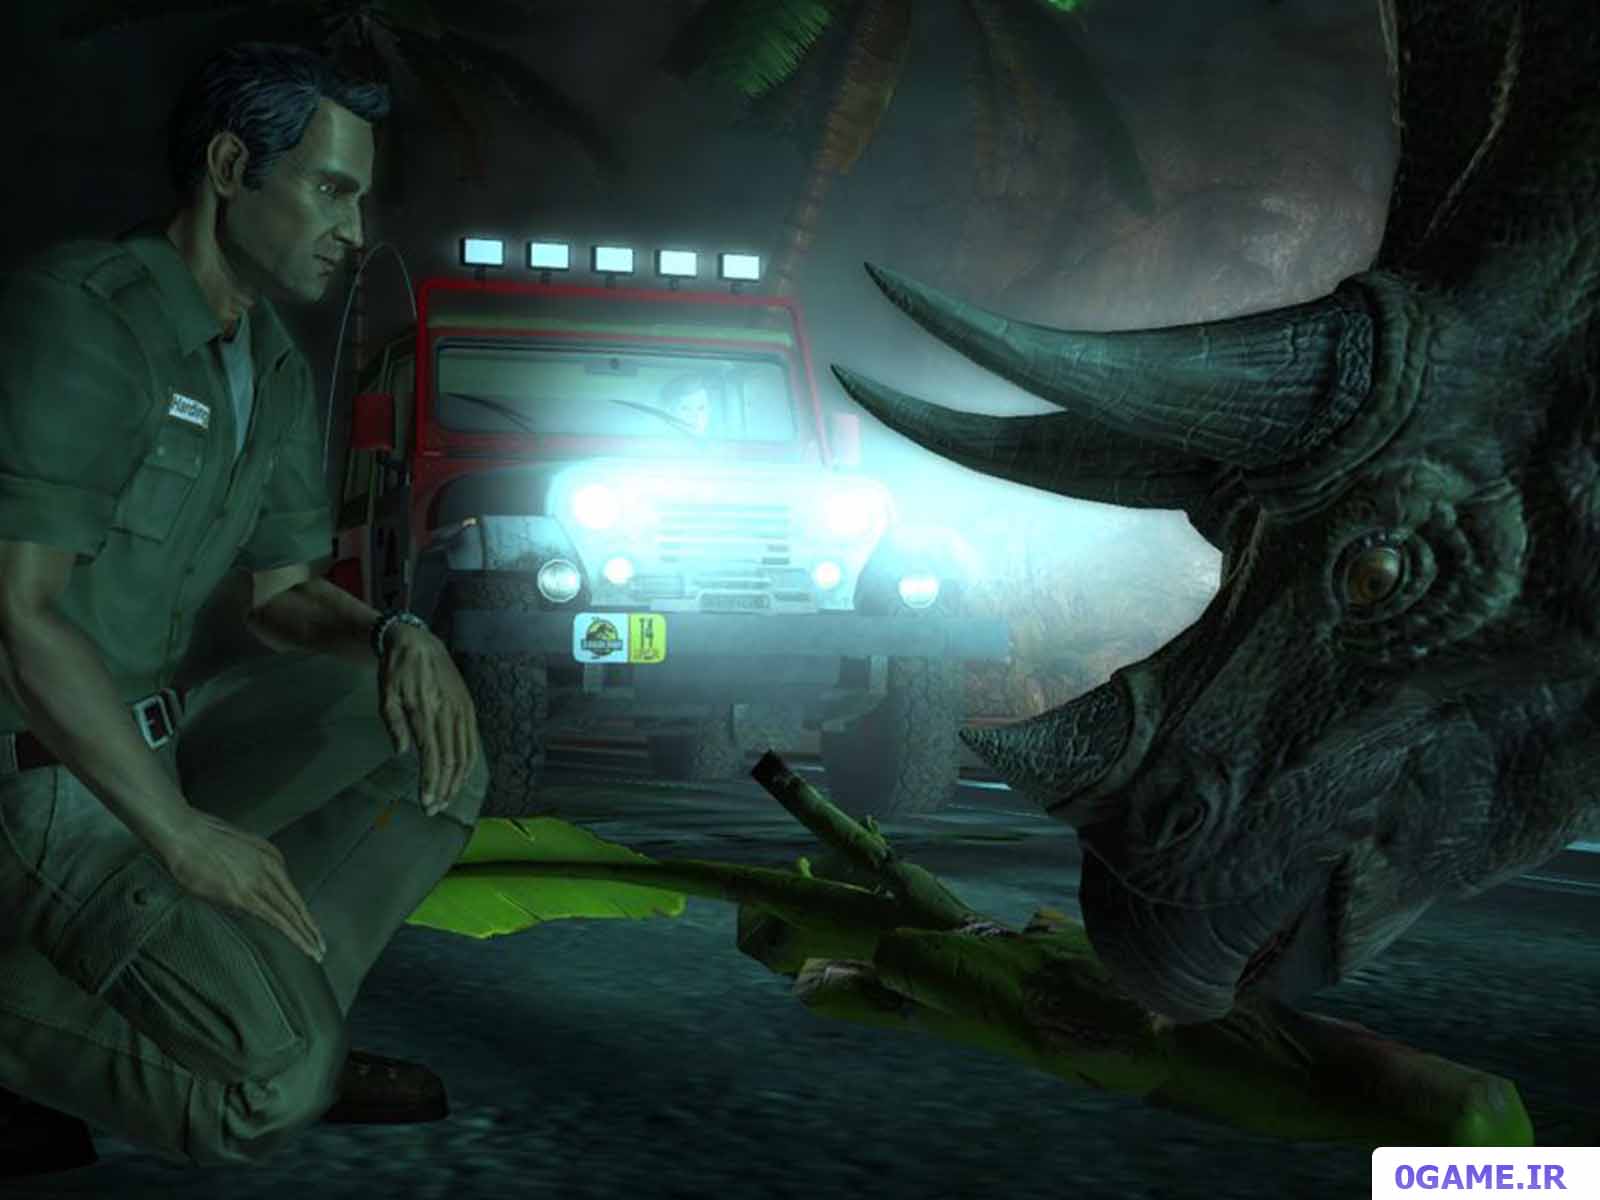 دانلود بازی پارک ژوراسیک (Jurassic Park: The Game) نسخه کامل برای کامپیوتر